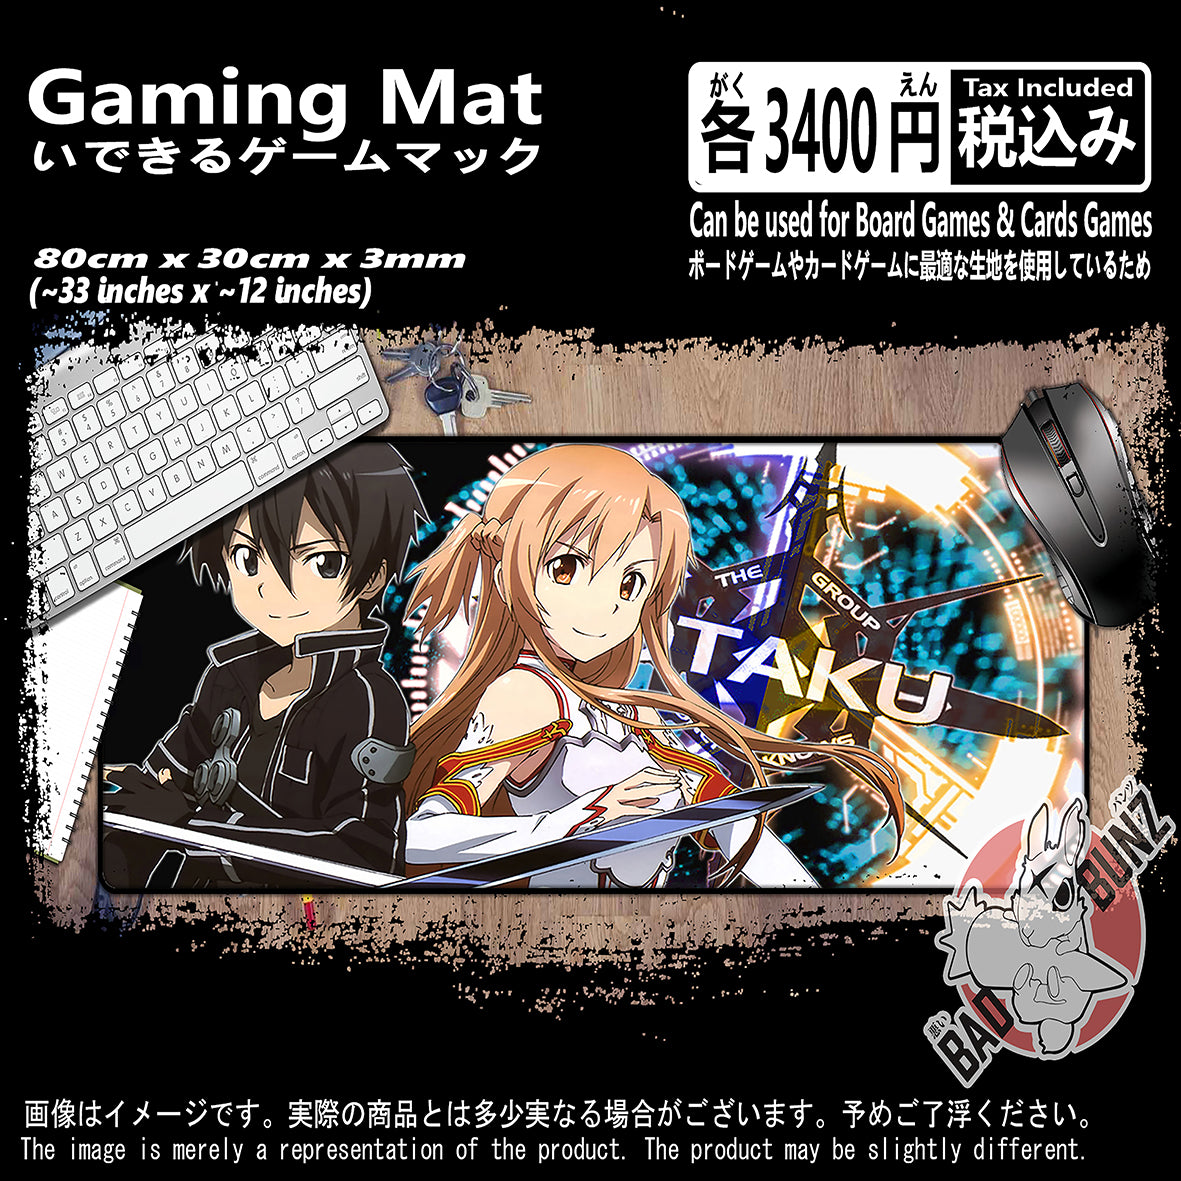 (AN-SAO-02) Sword Art Online Anime 800mm x 300mm Gaming Play Mat